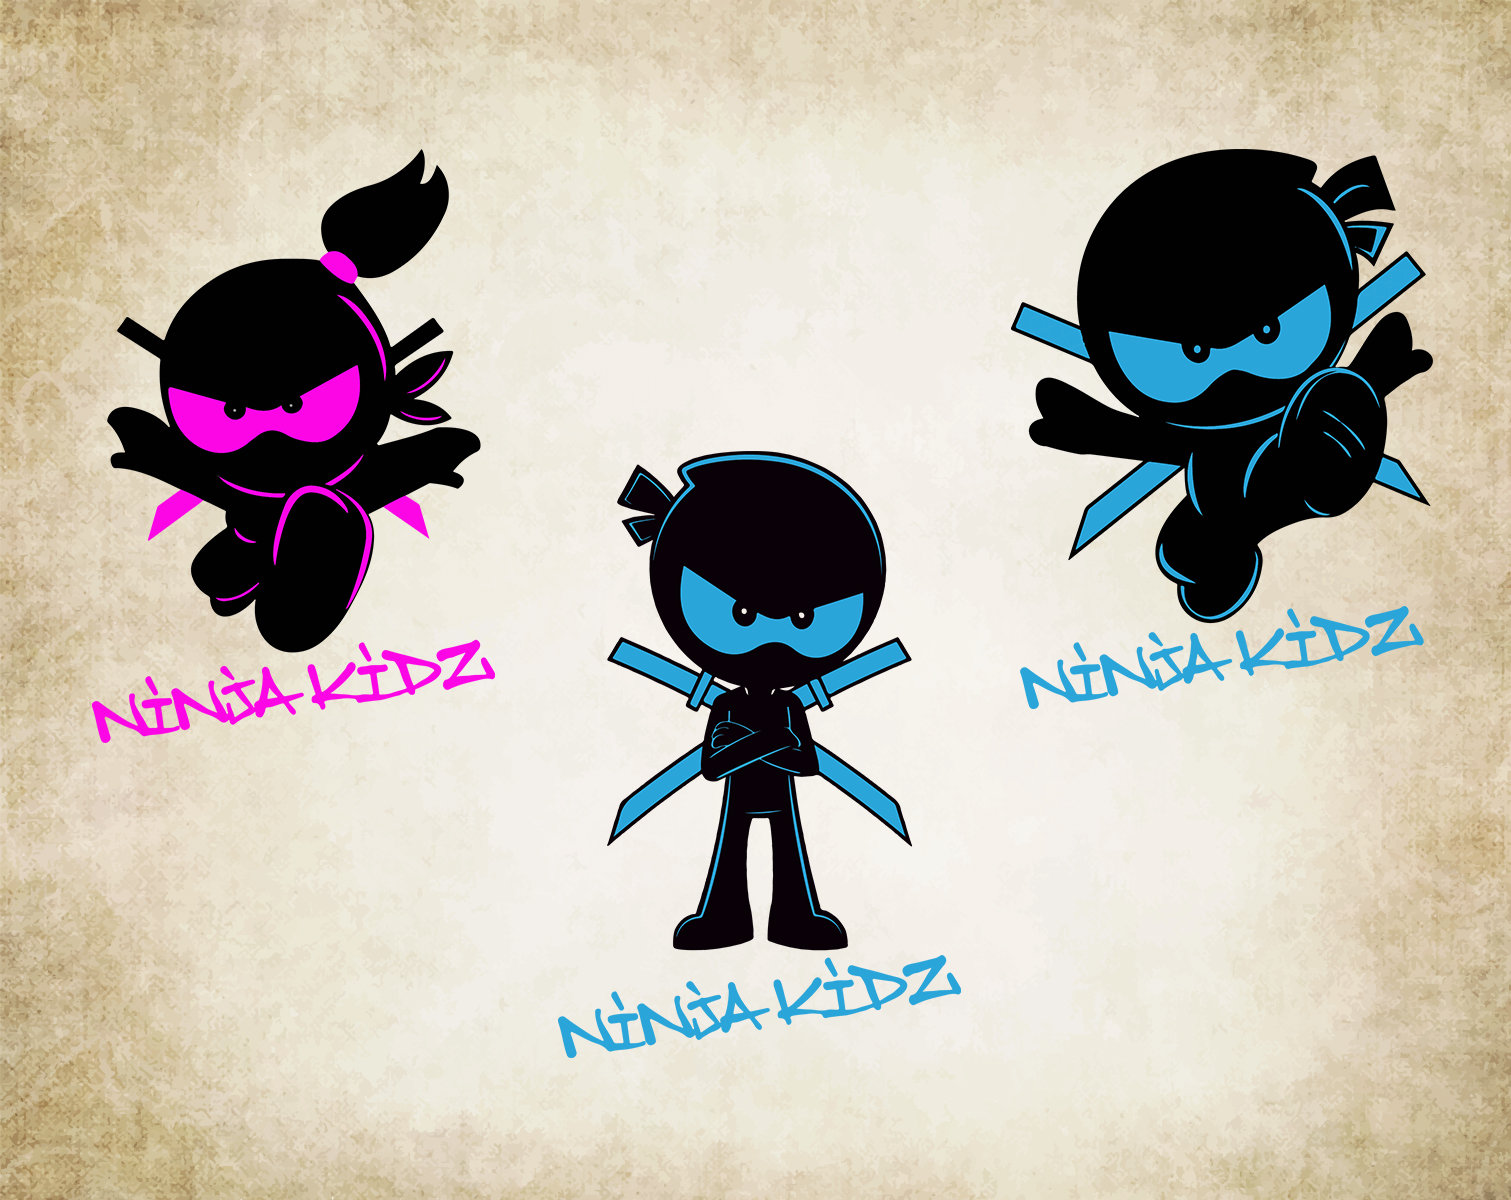 Inspired New Ninja Kidz Tv Kids 2021 T-shirt Gaming Team Top Tee Cwc  Inspired Hoodies 